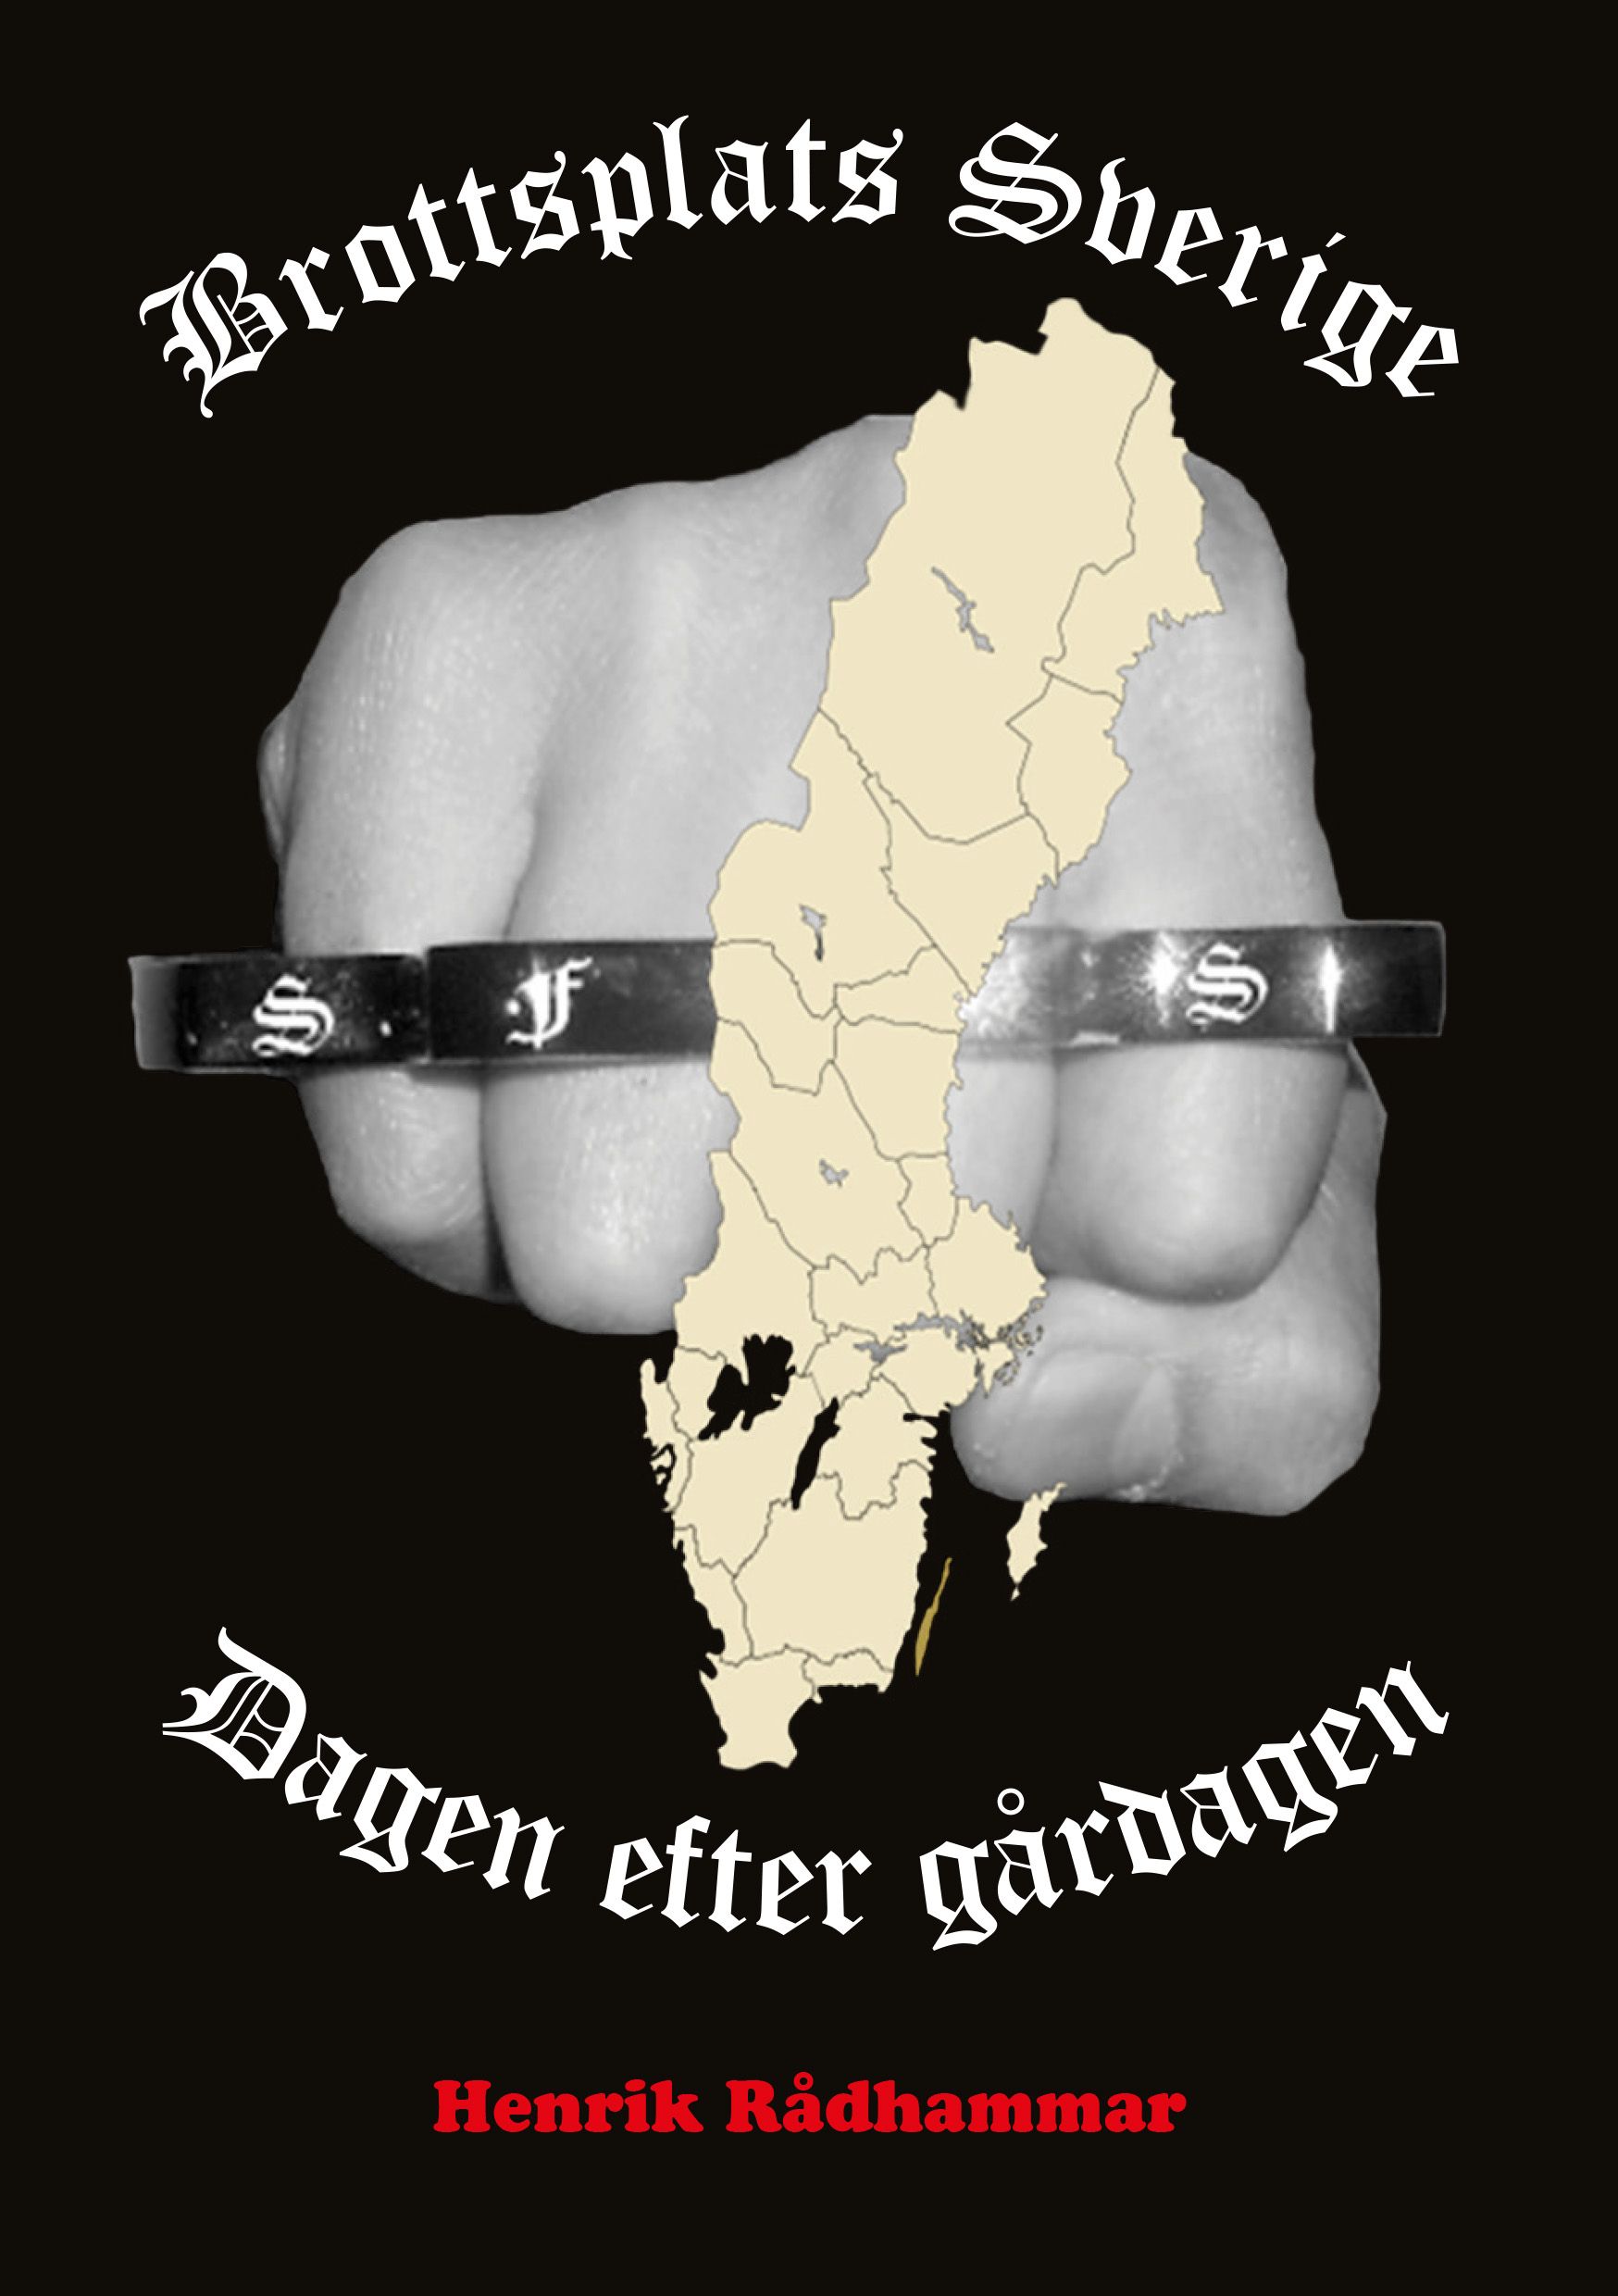 Brottsplats Sverige - Dagen efter gårdagen, e-bok av Henrik Rådhammar